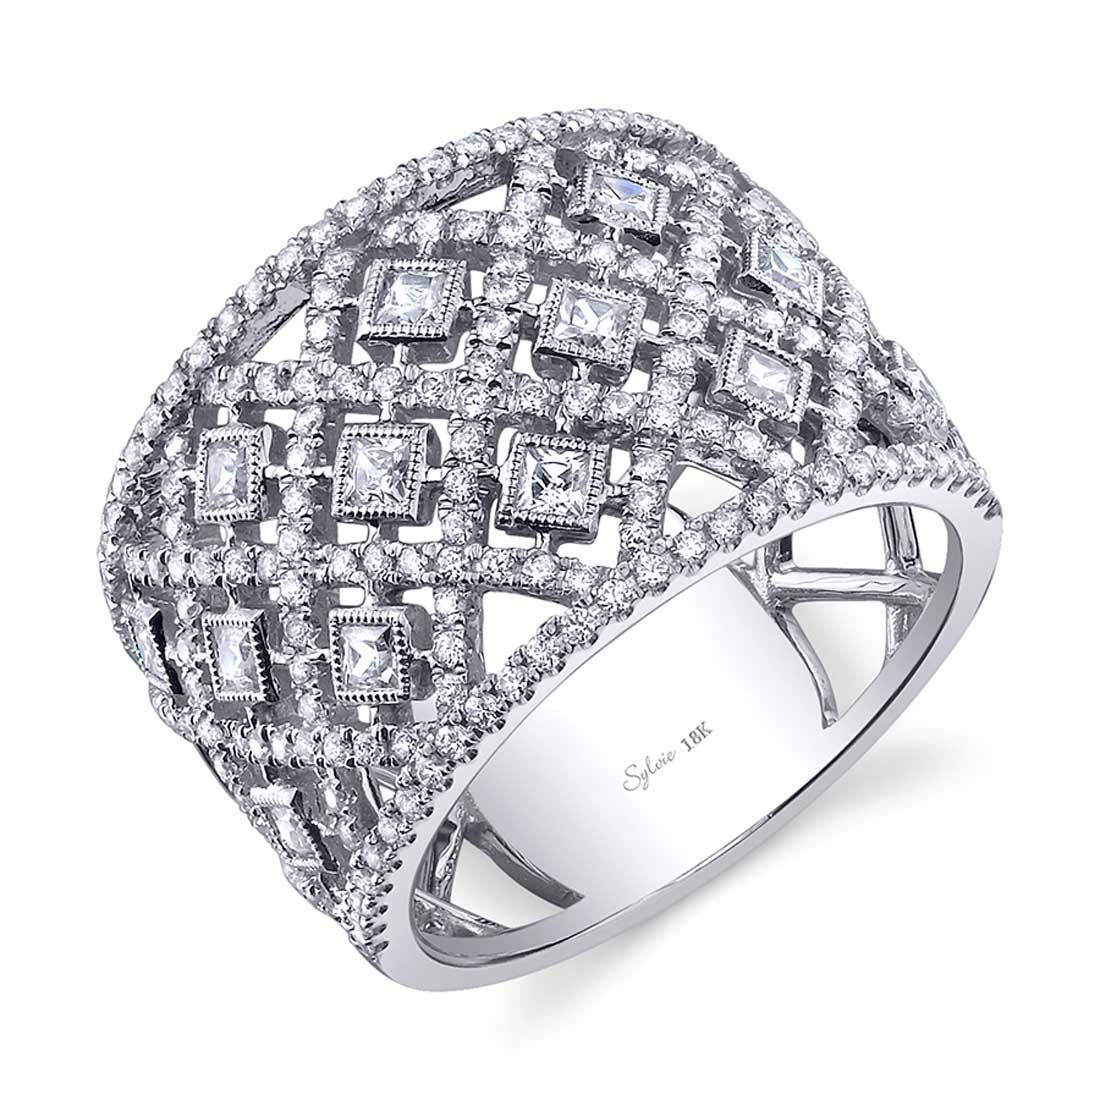 Glamorous Diamond Ring